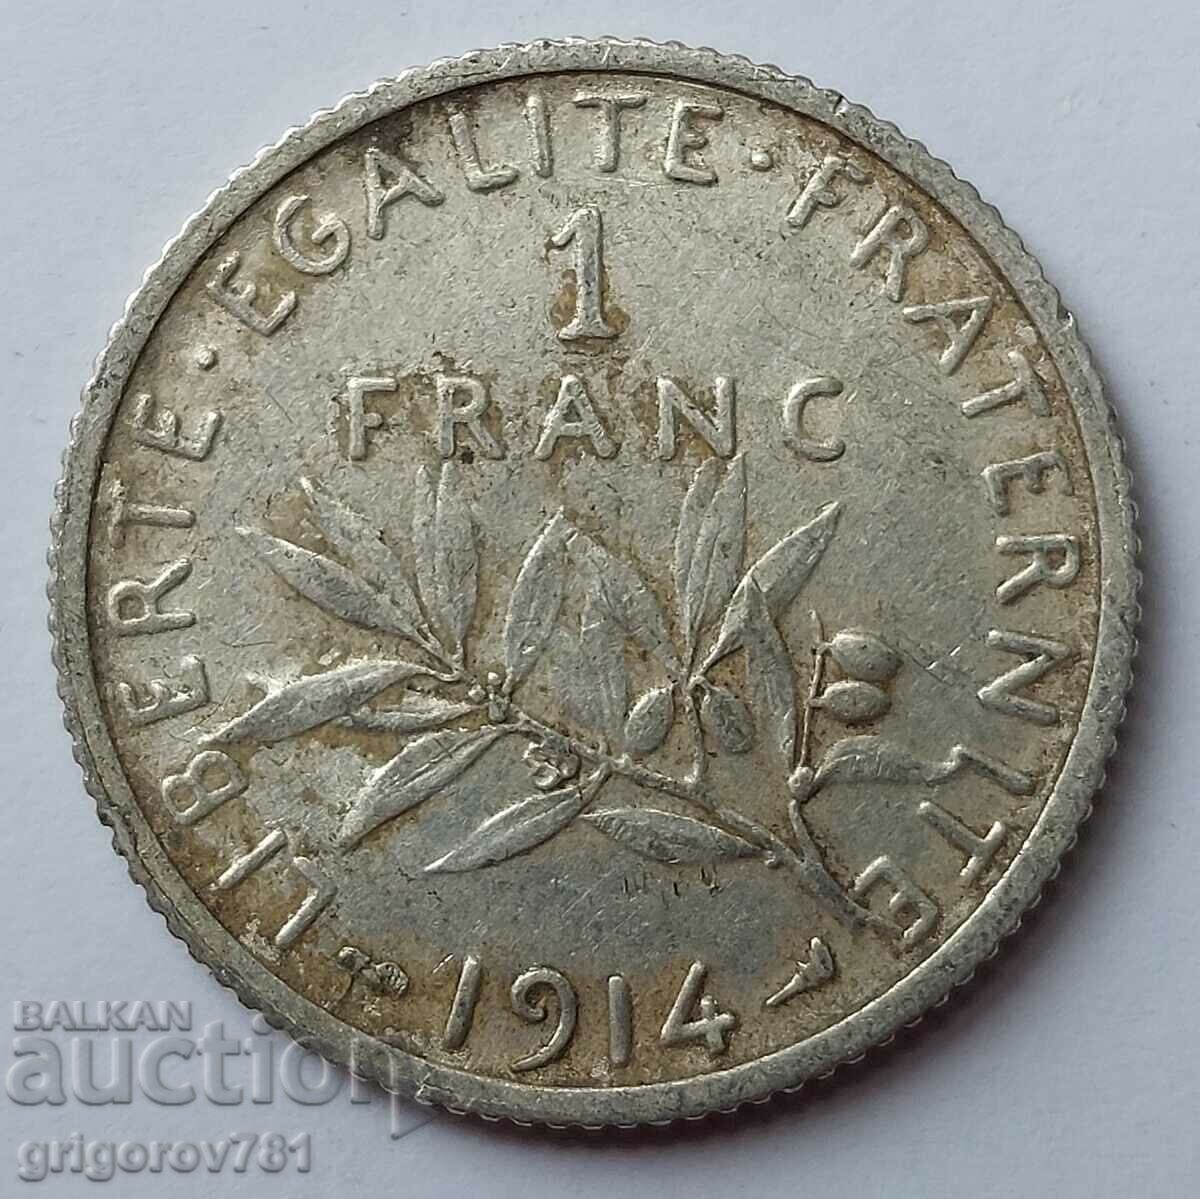 Ασημένιο 1 φράγκου Γαλλία 1914 - ασημένιο νόμισμα №27